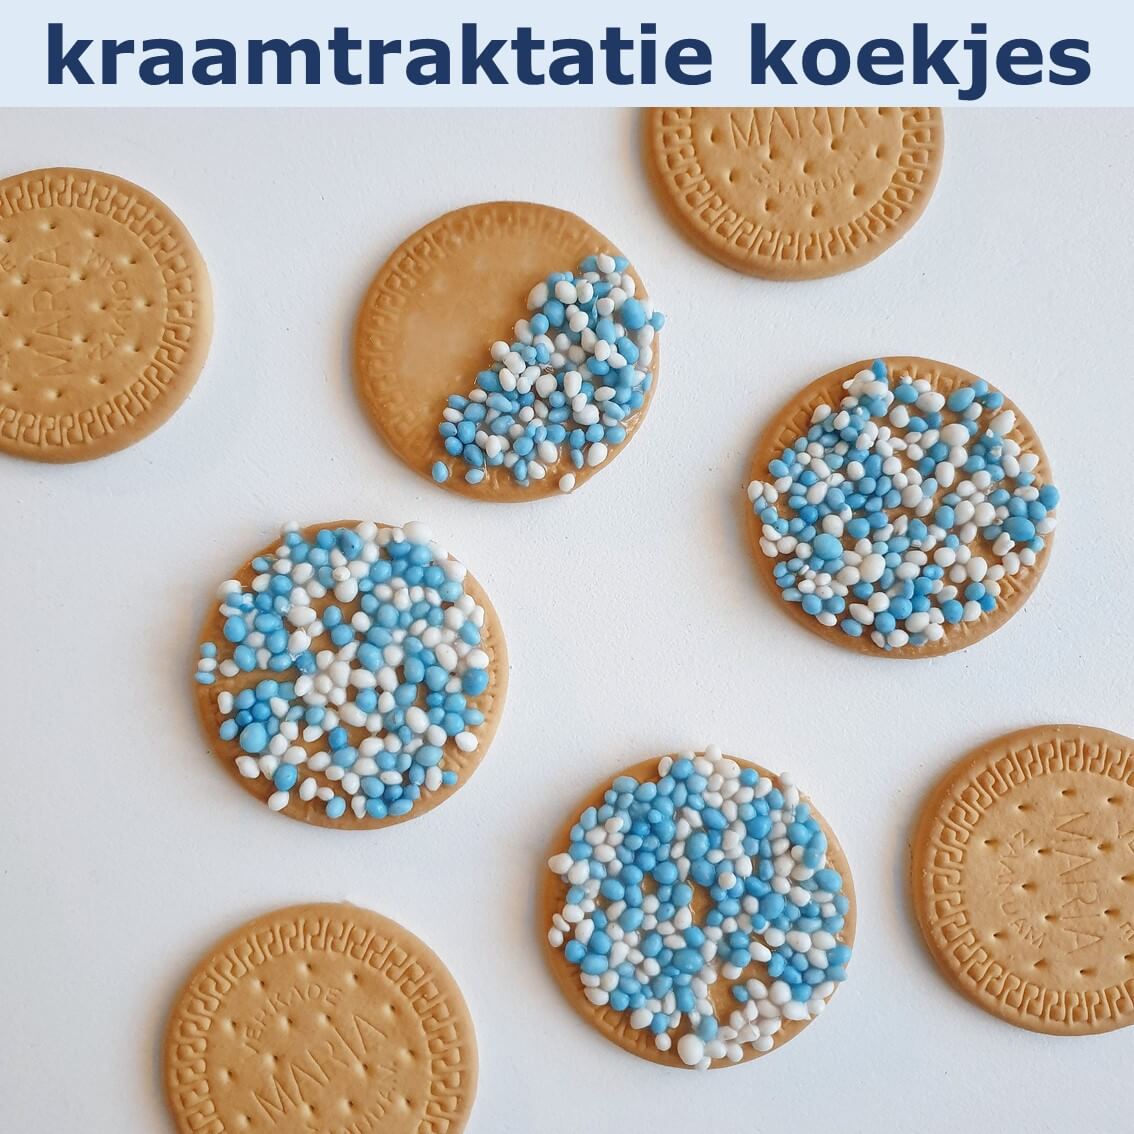 Traktaties met kids: een recept voor makkelijke kraamtraktatie koekjes